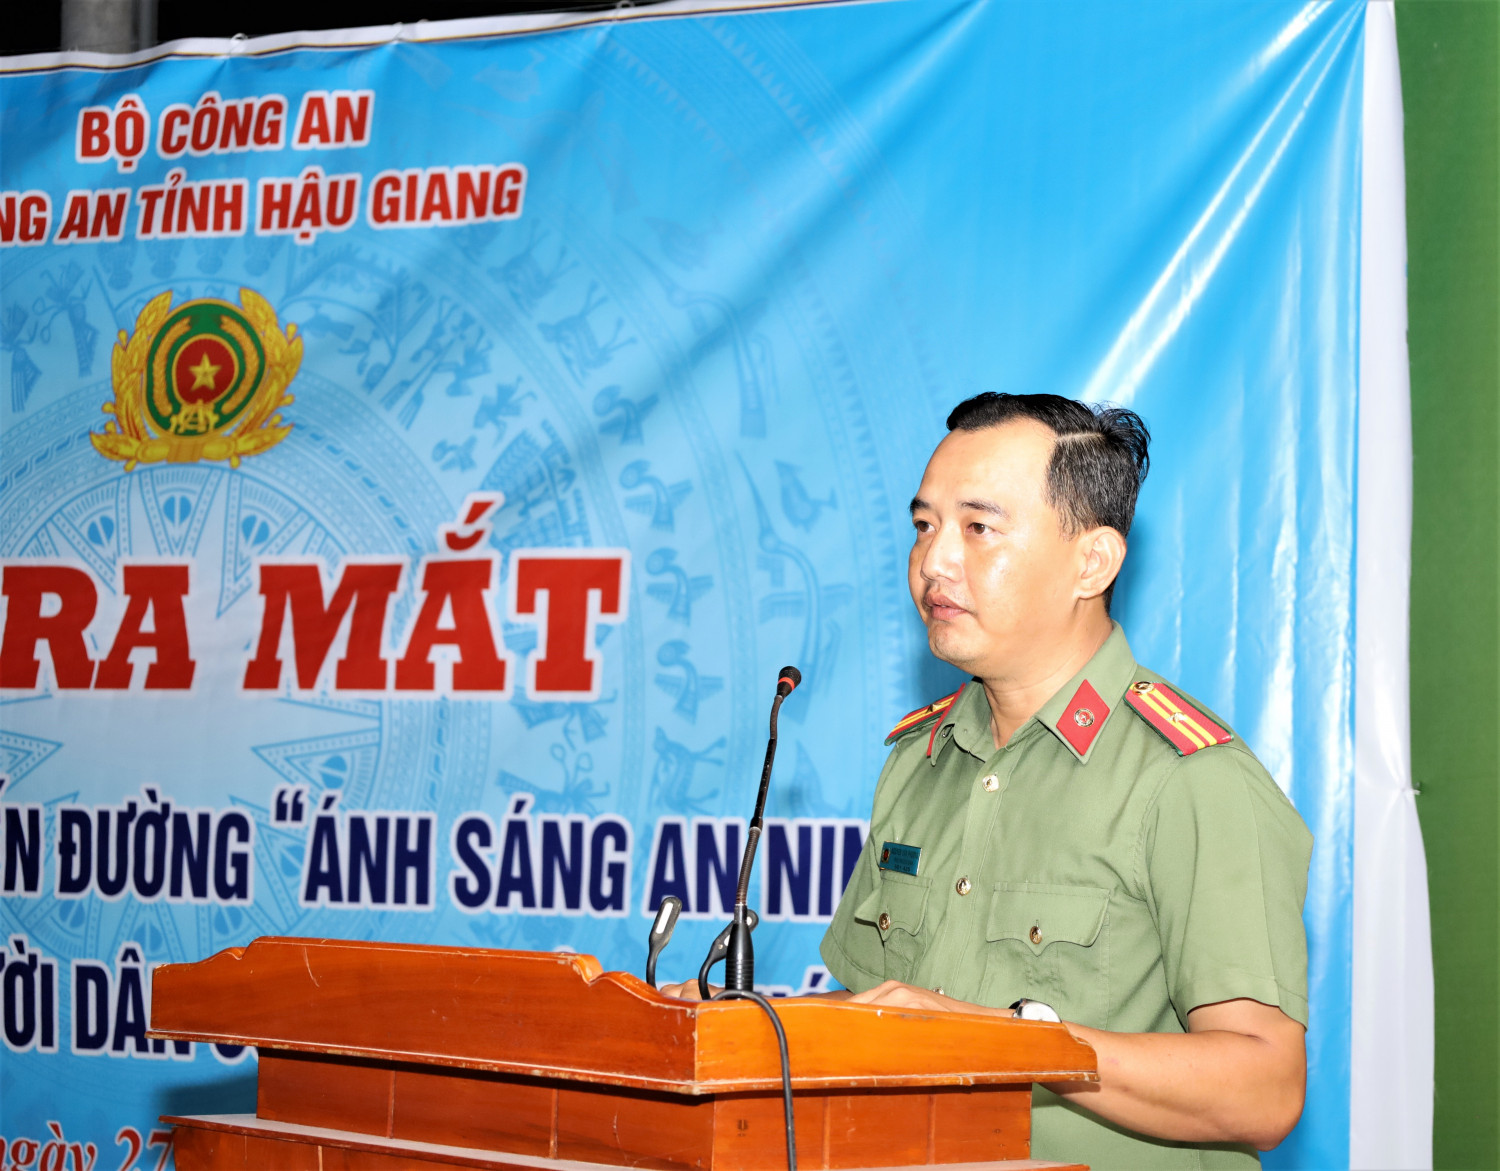 Thiếu tá Nguyễn Văn Phương, Trưởng Ban Thanh niên Công an tỉnh báo cáo tóm tắt kết quả triển khai mô hình